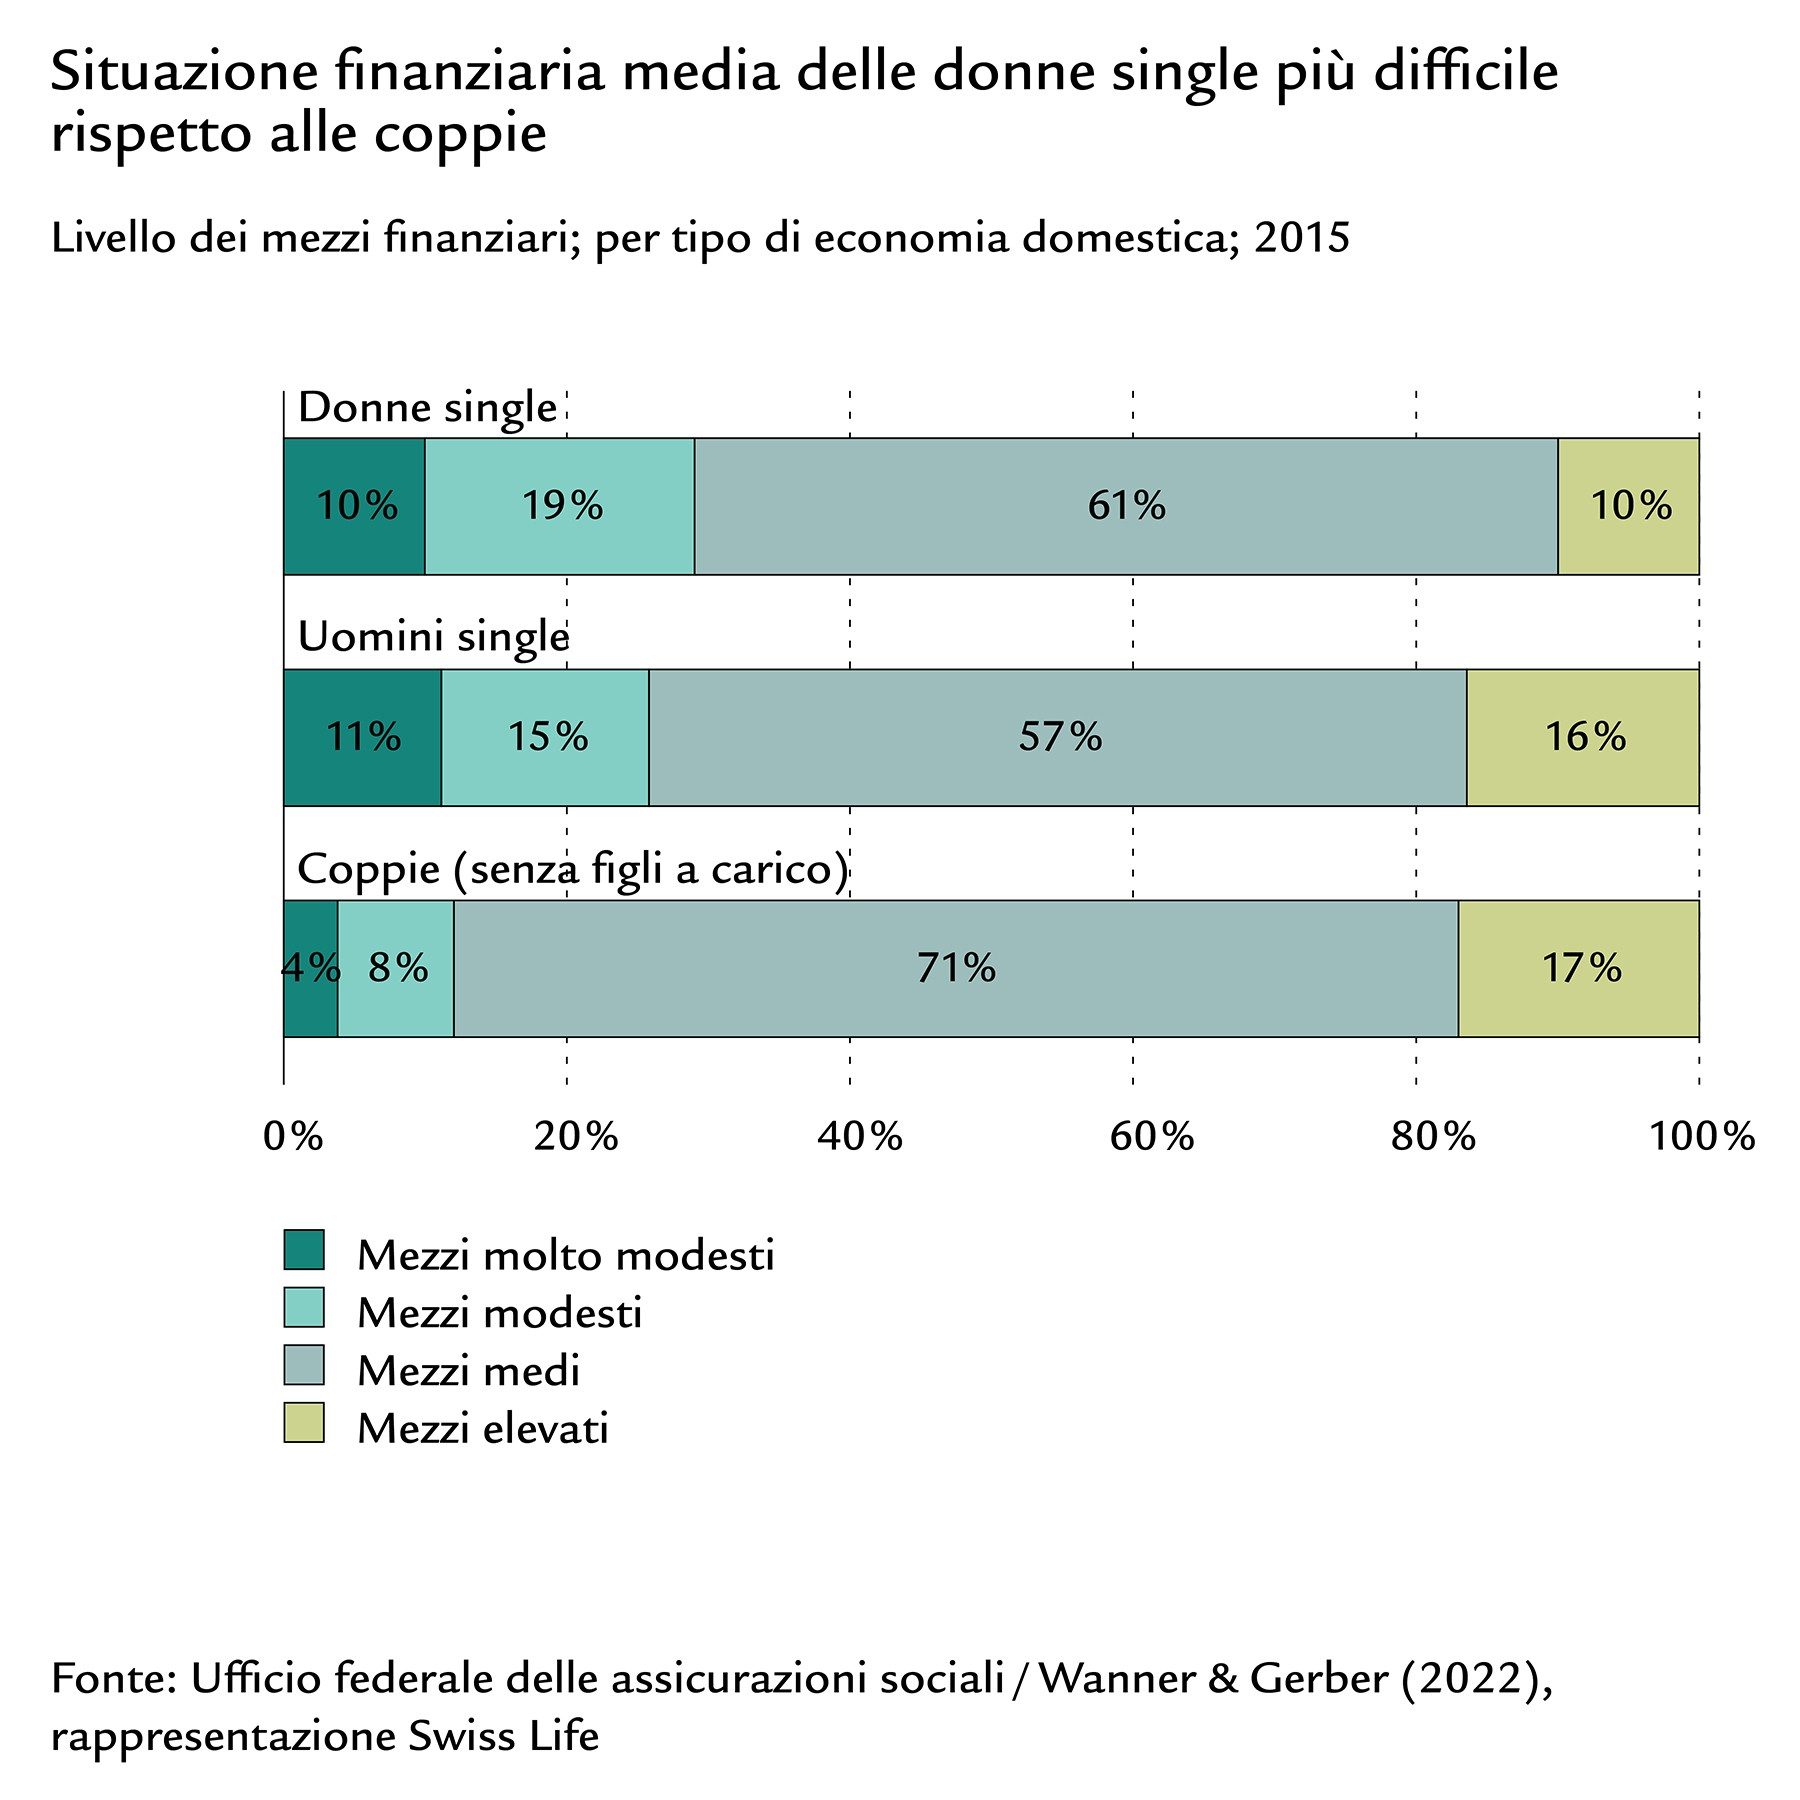 Diagramma a barre sulla situazione finanziaria di donne single, uomini single e coppie